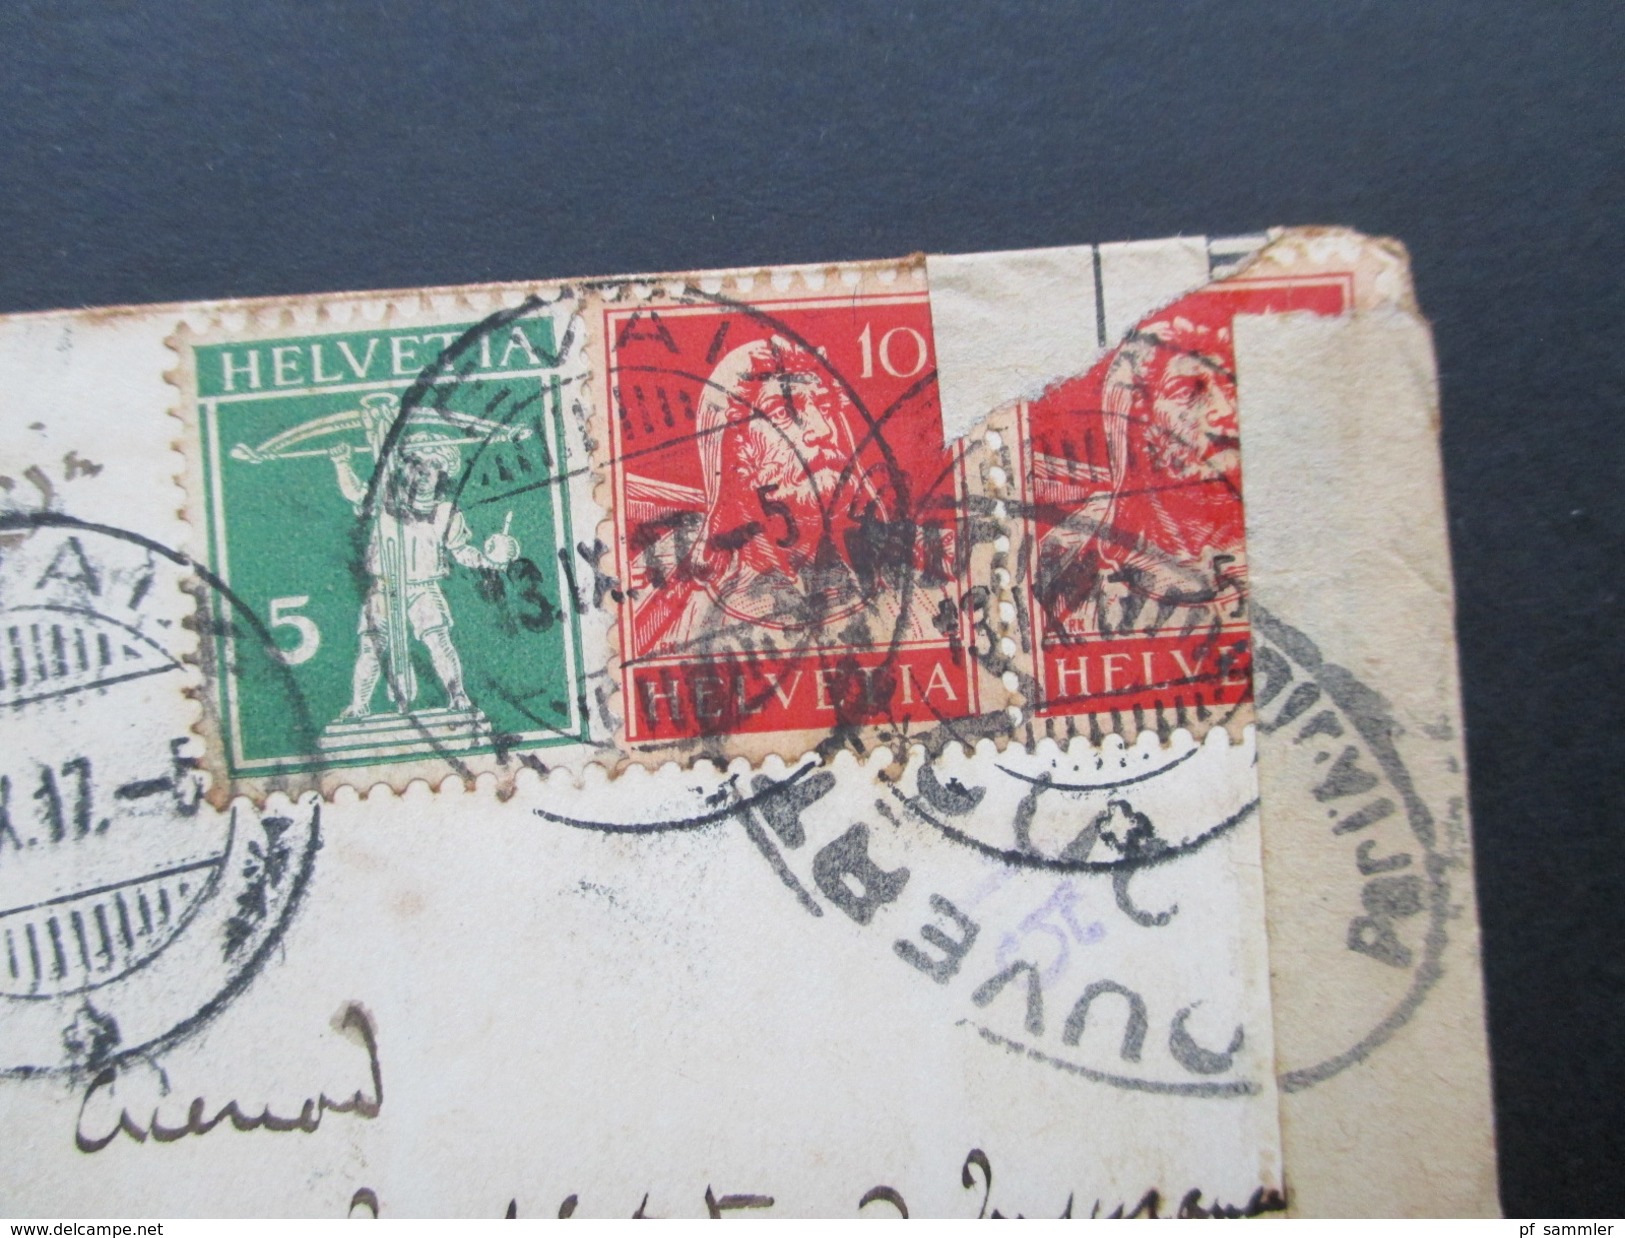 Schweiz 1917 Kleiner Brief Bevaix - Texas. Diplomatenbrief. C. Lardy Ministre De Suisse. Zensurbrief. Social Philately - Briefe U. Dokumente